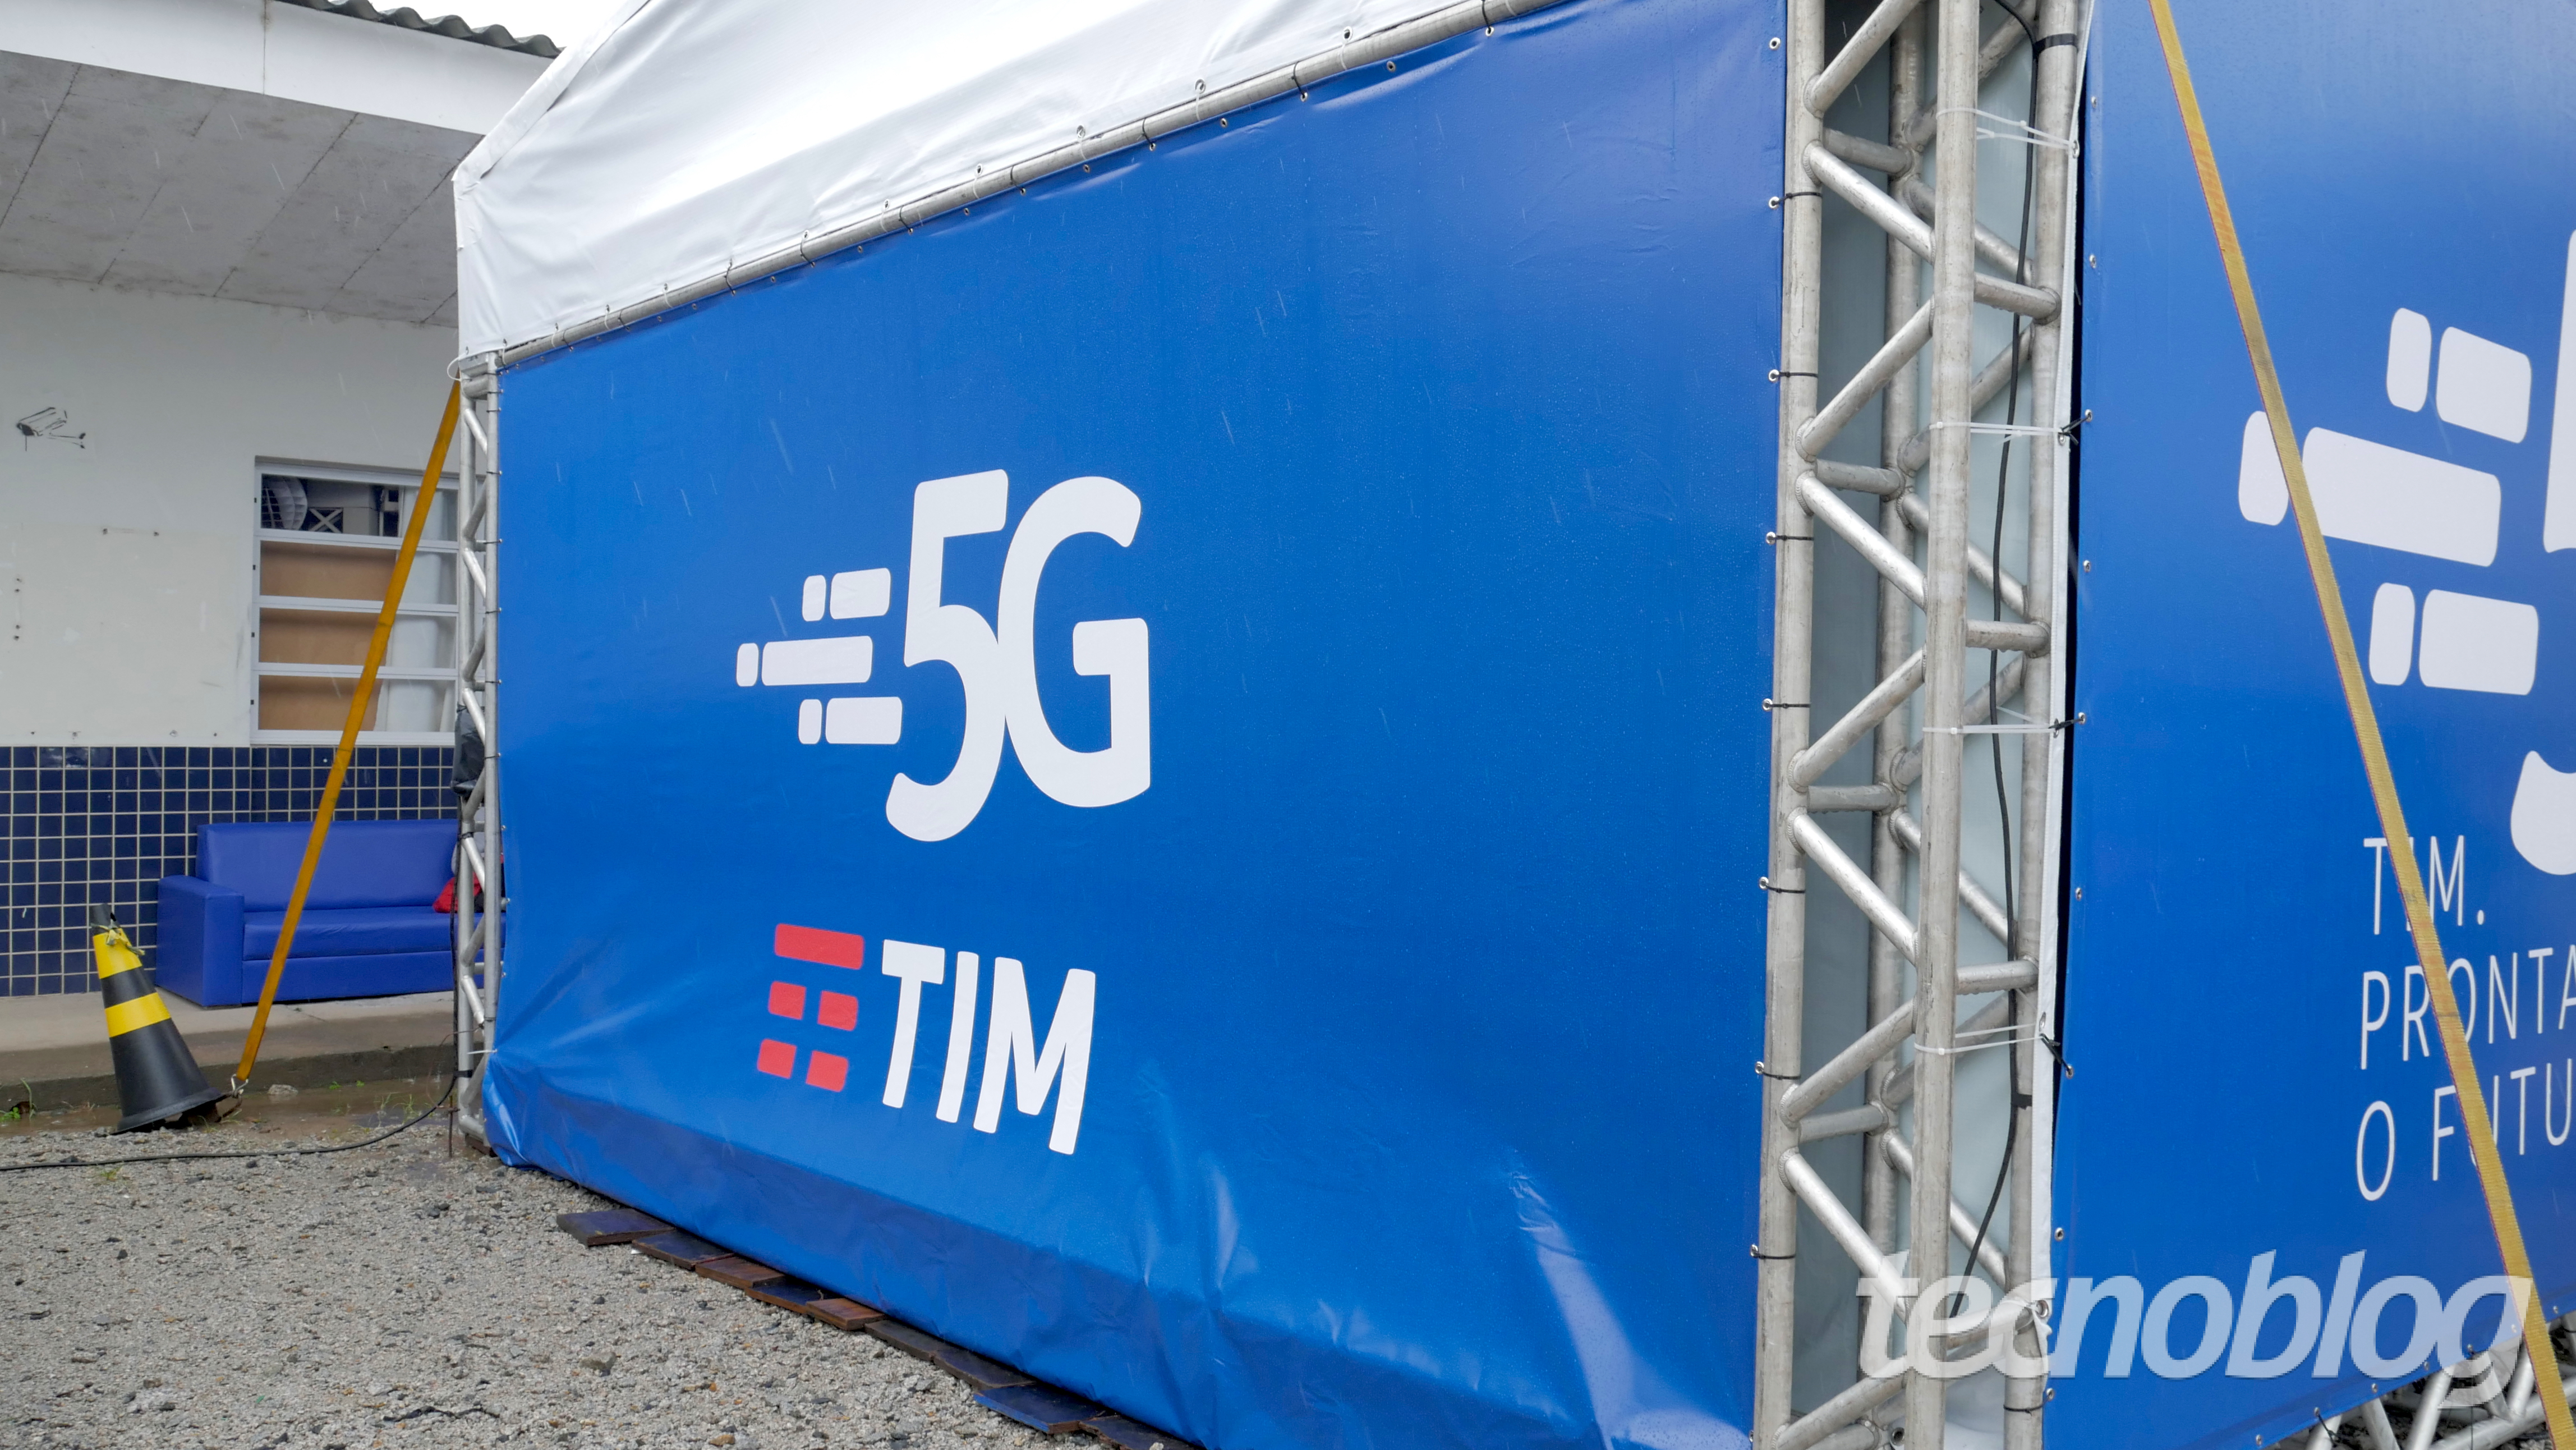 Senacon investiga TIM, Claro, Vivo e Oi por uso do termo 5G em propagandas | Telecomunicações